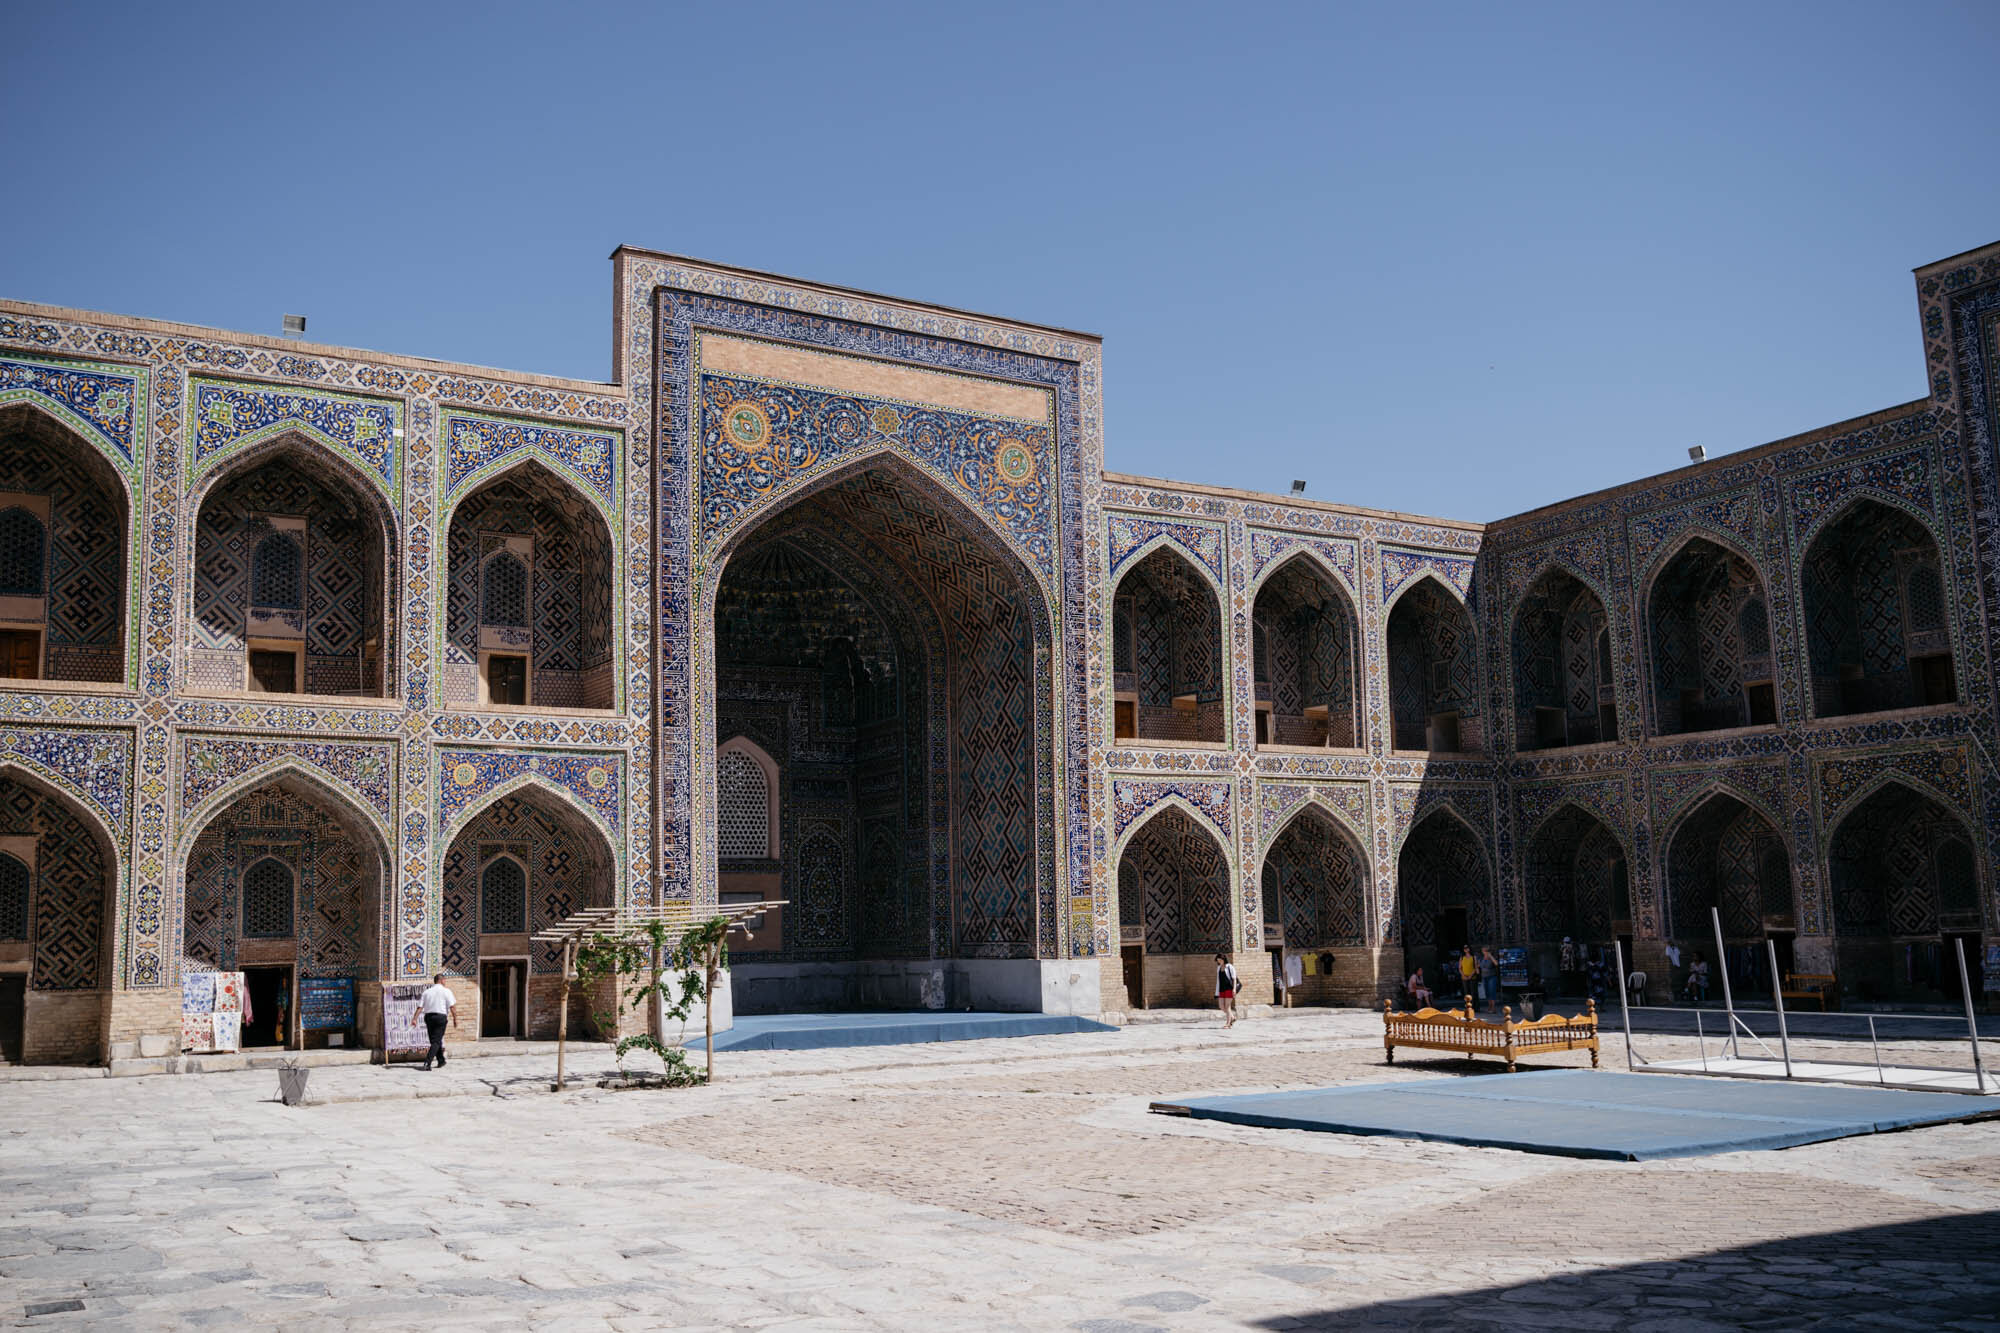  The Sher-Dor Madrasah, Samarkand 